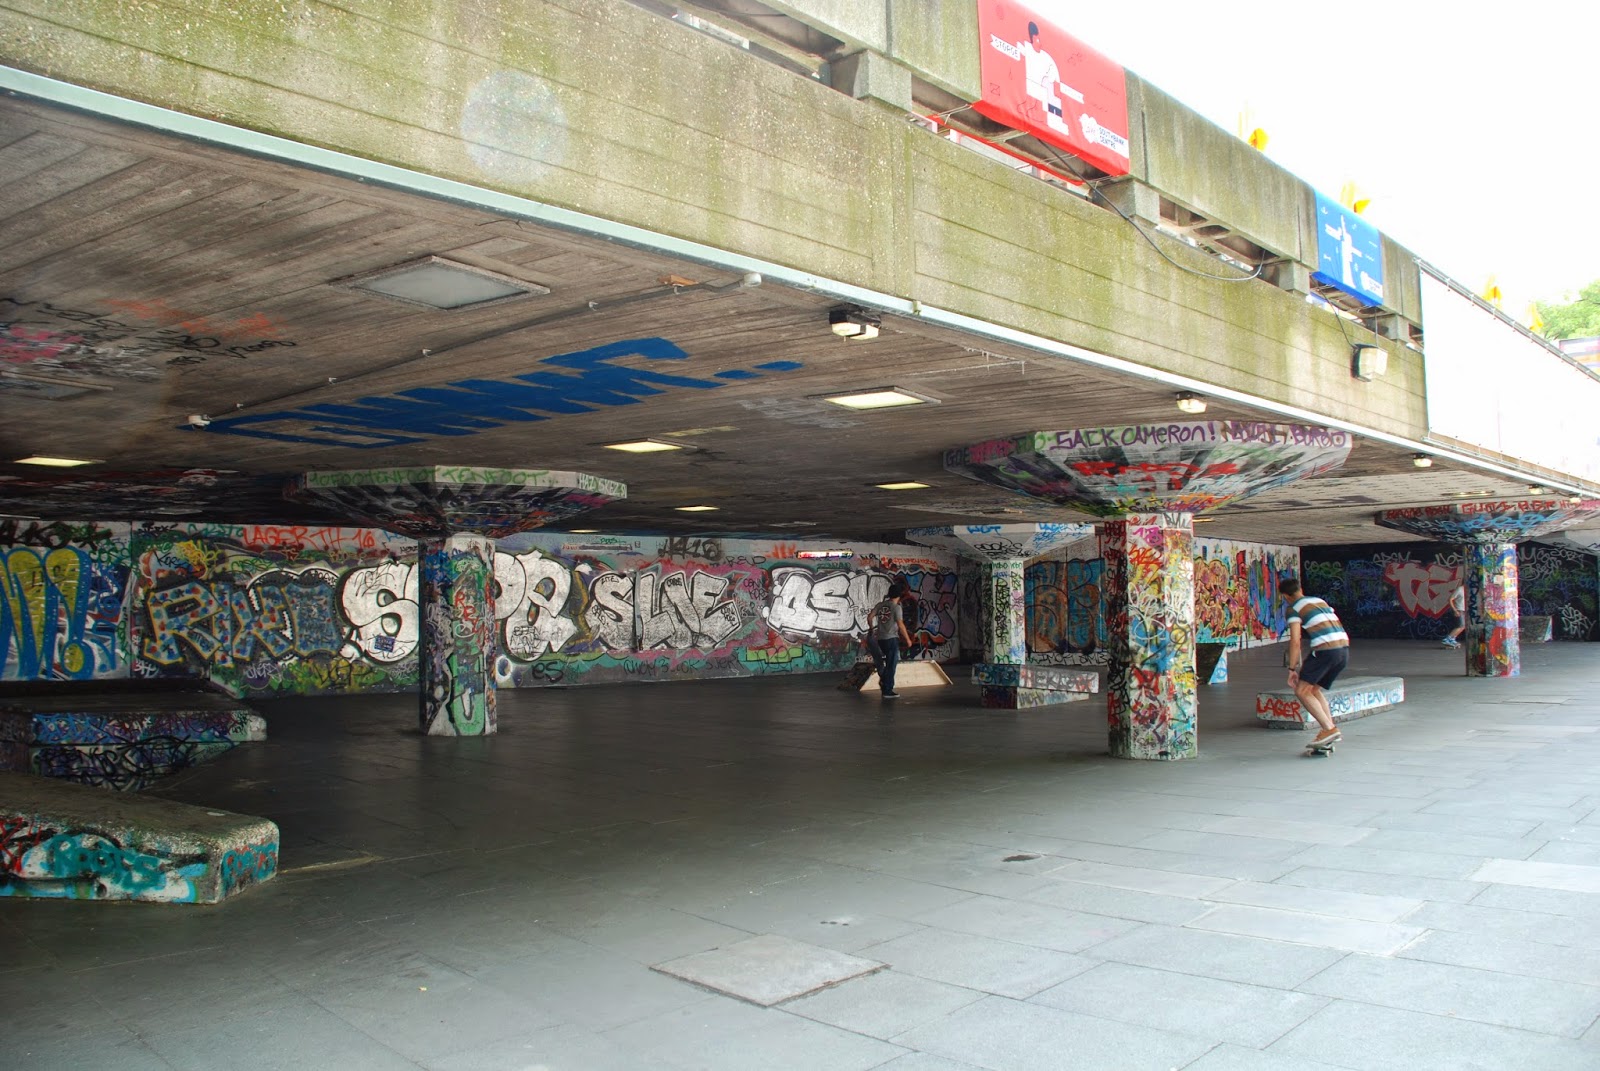 Skateboarders' Park, Southbank Centre